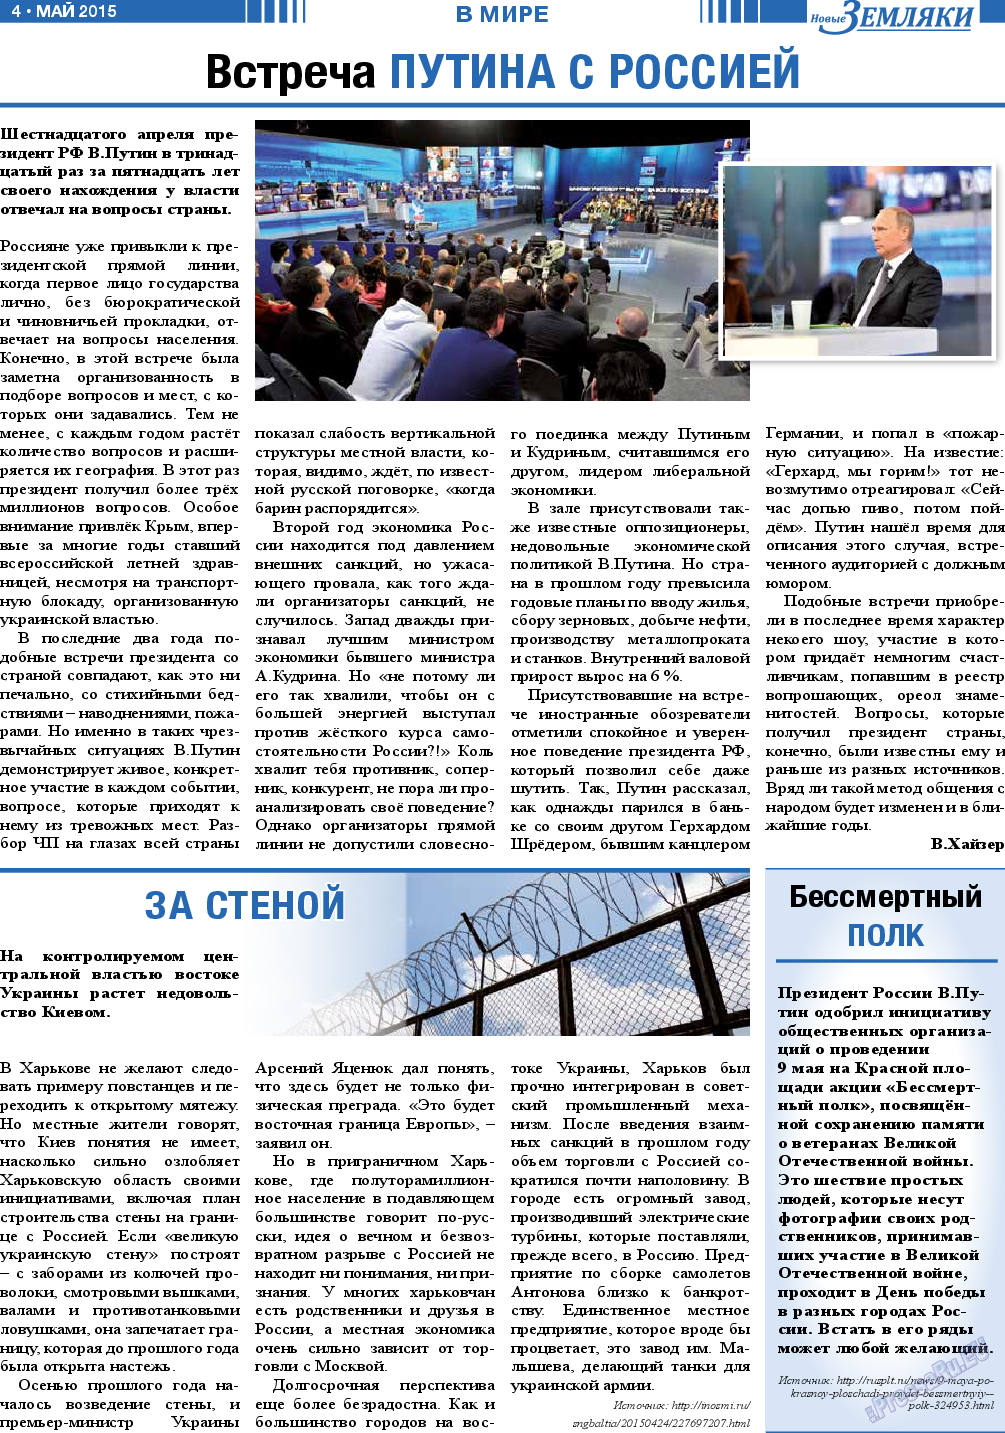 Новые Земляки, газета. 2015 №5 стр.4